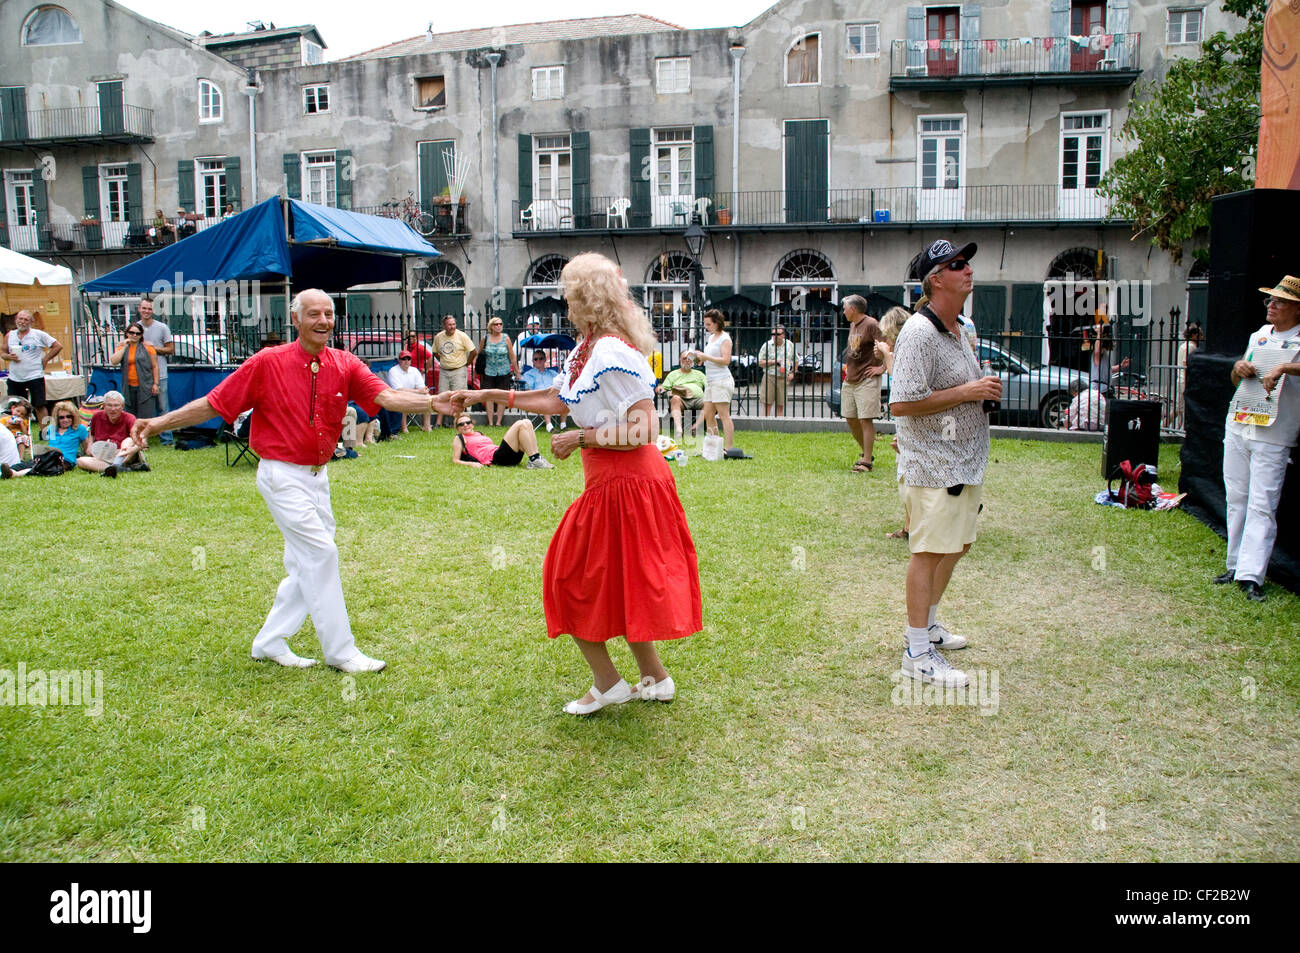 Einwohner von New Orleans nehmen an einem Cajun- und Zydeco-Musikfestival im französischen Viertel der Stadt, Louisiana, USA, Teil. Stockfoto